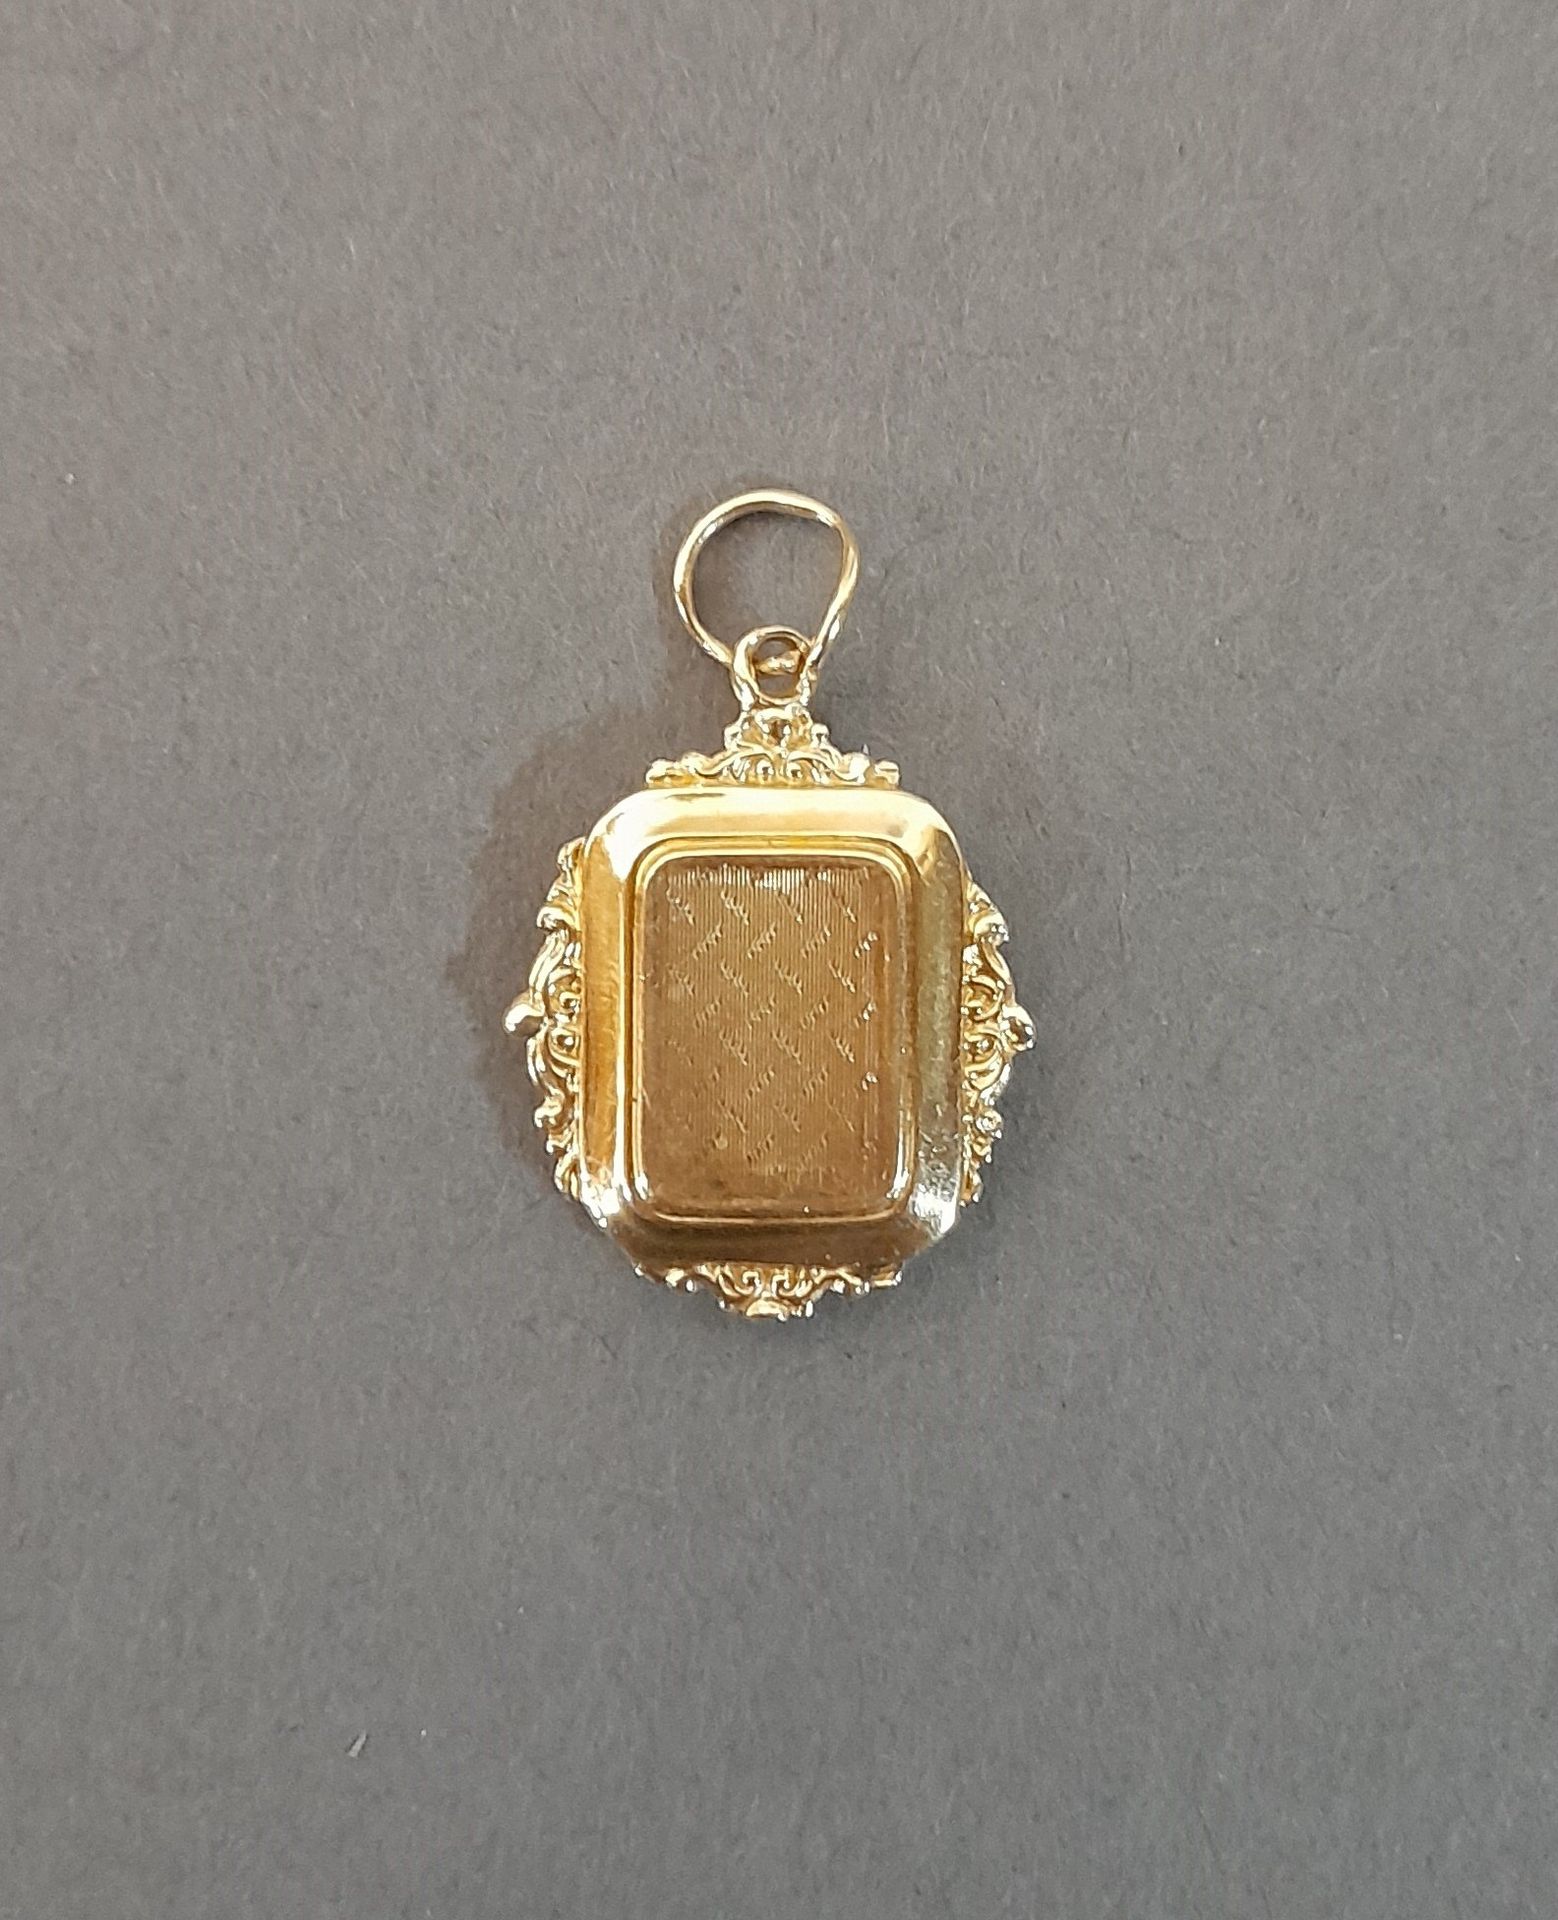 Pendentif Gold pendant - souvenir (accdient) (2grs)